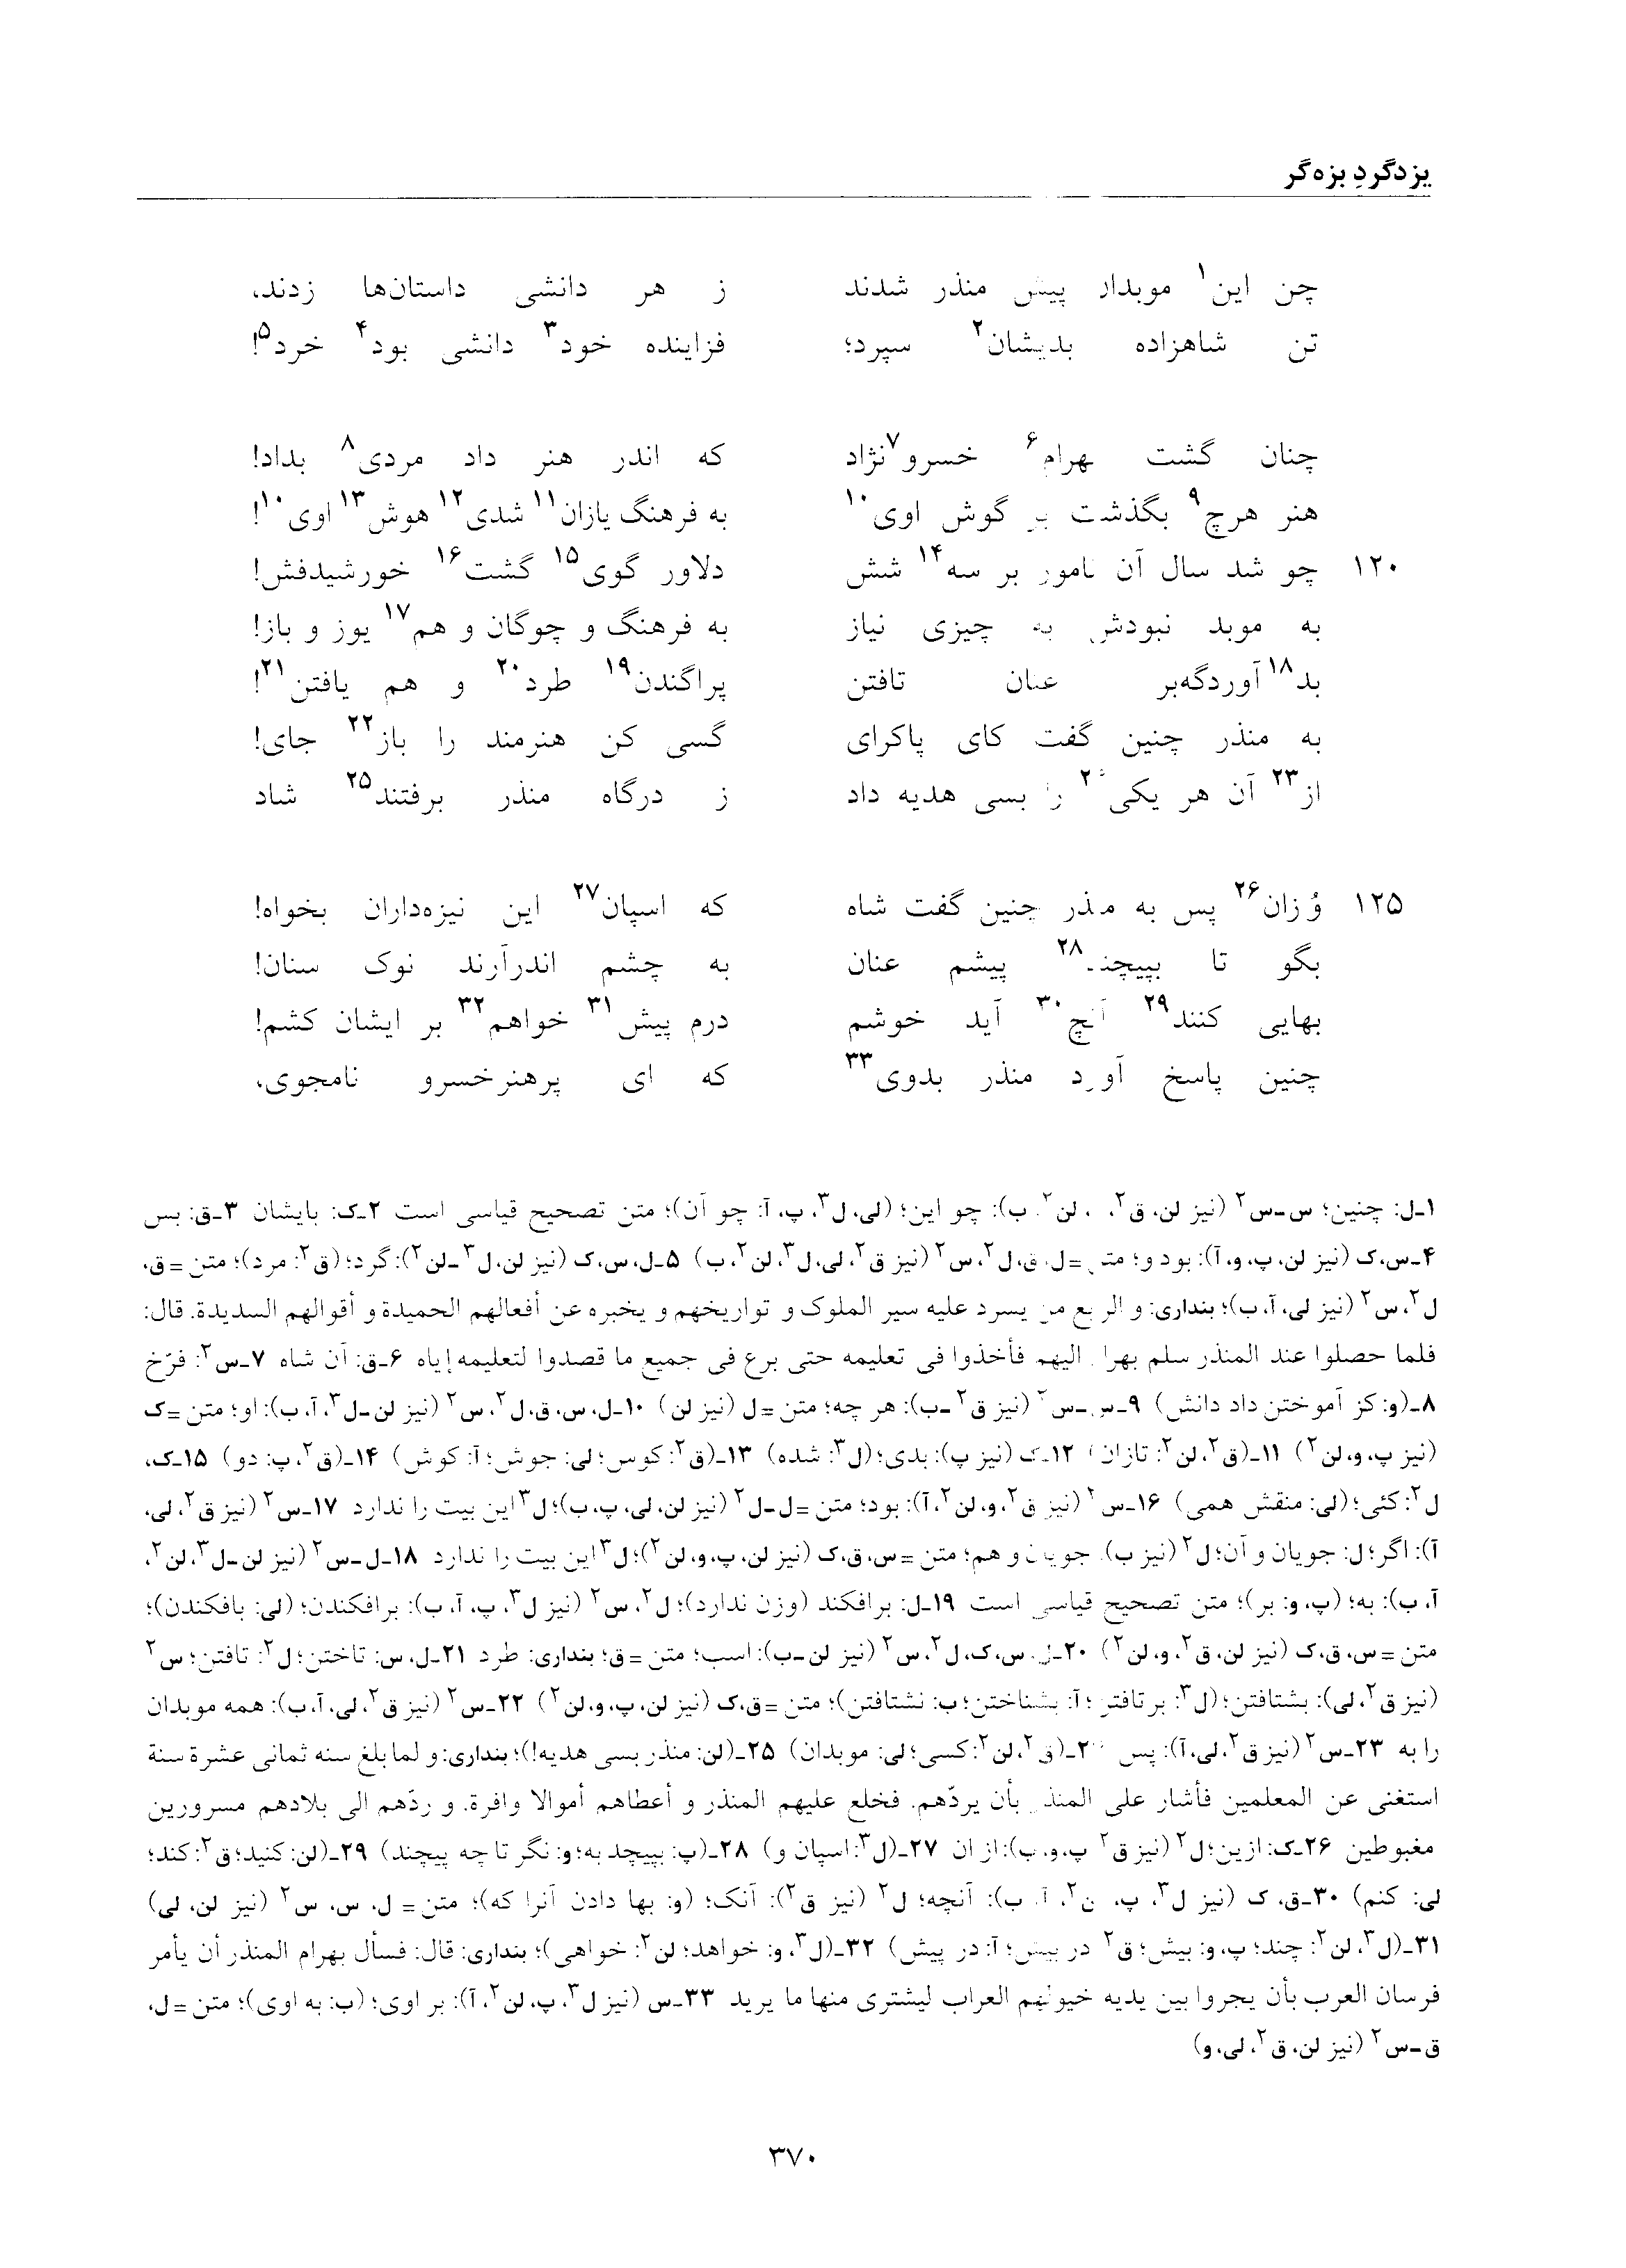 vol. 6, p. 370